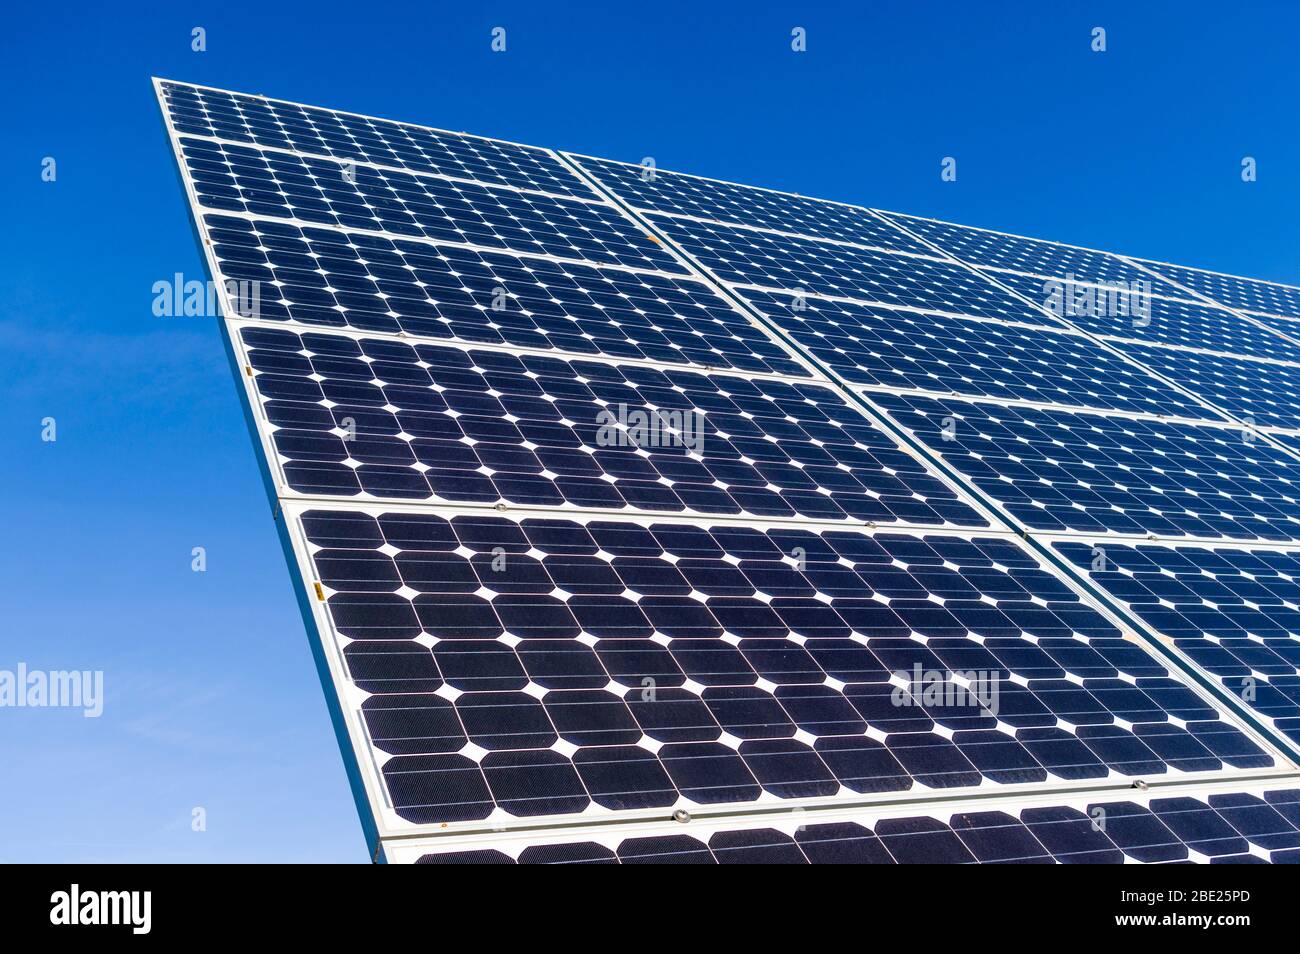 Vue détaillée des panneaux solaires d'une centrale solaire dans un ciel bleu clair et sans nuages Banque D'Images